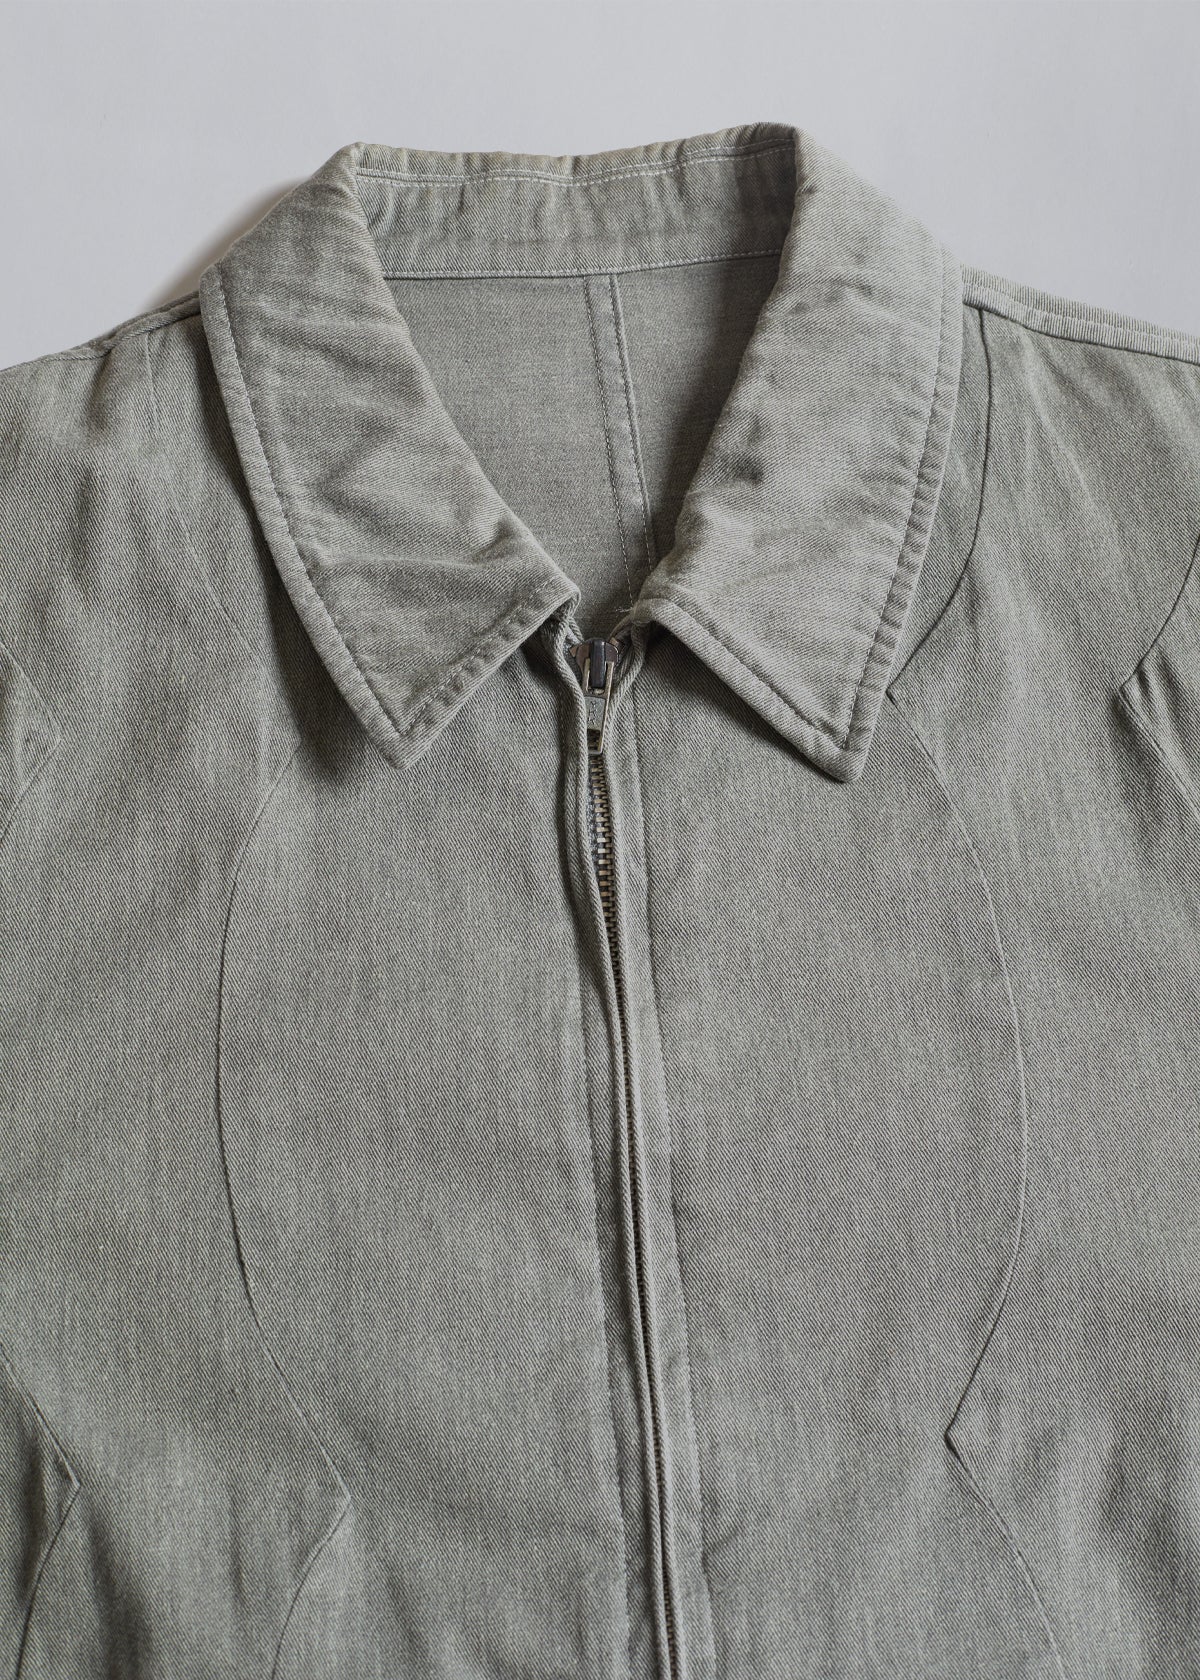 Homme Grey Cotton Zip Work Jacket 1988 - Medium - The Archivist Store